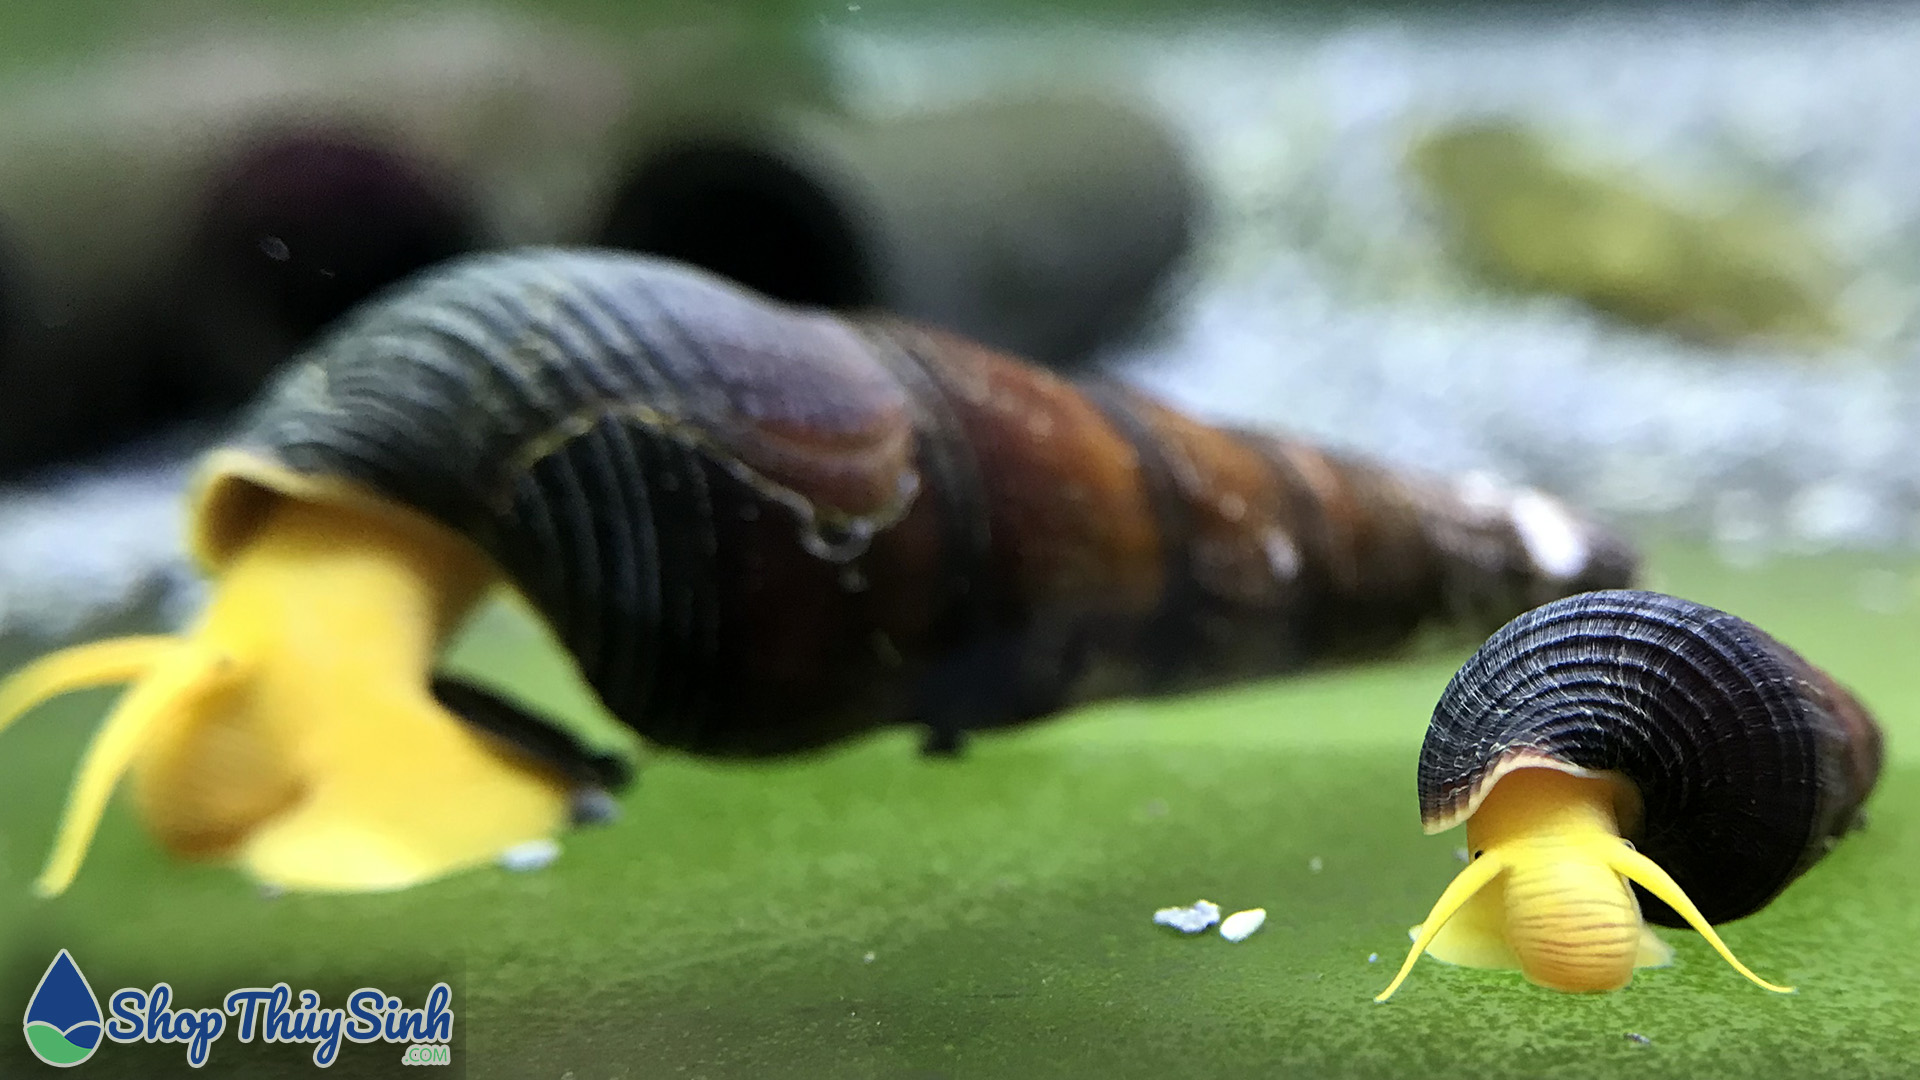 Ốc Sulawesi - một loài ốc cảnh đa dạng về màu sắc